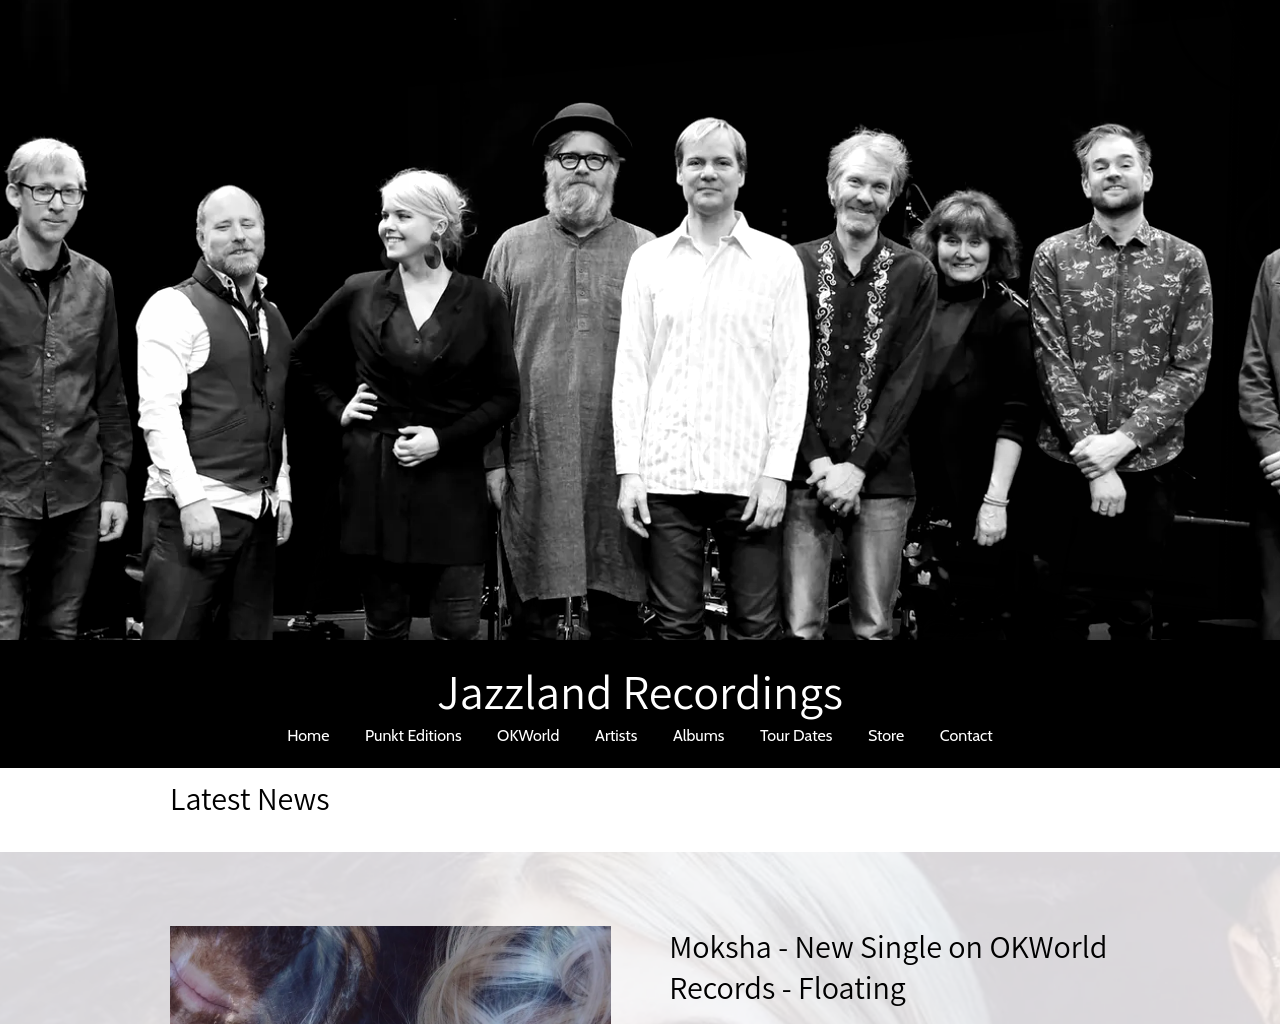 jazzlandrec.com